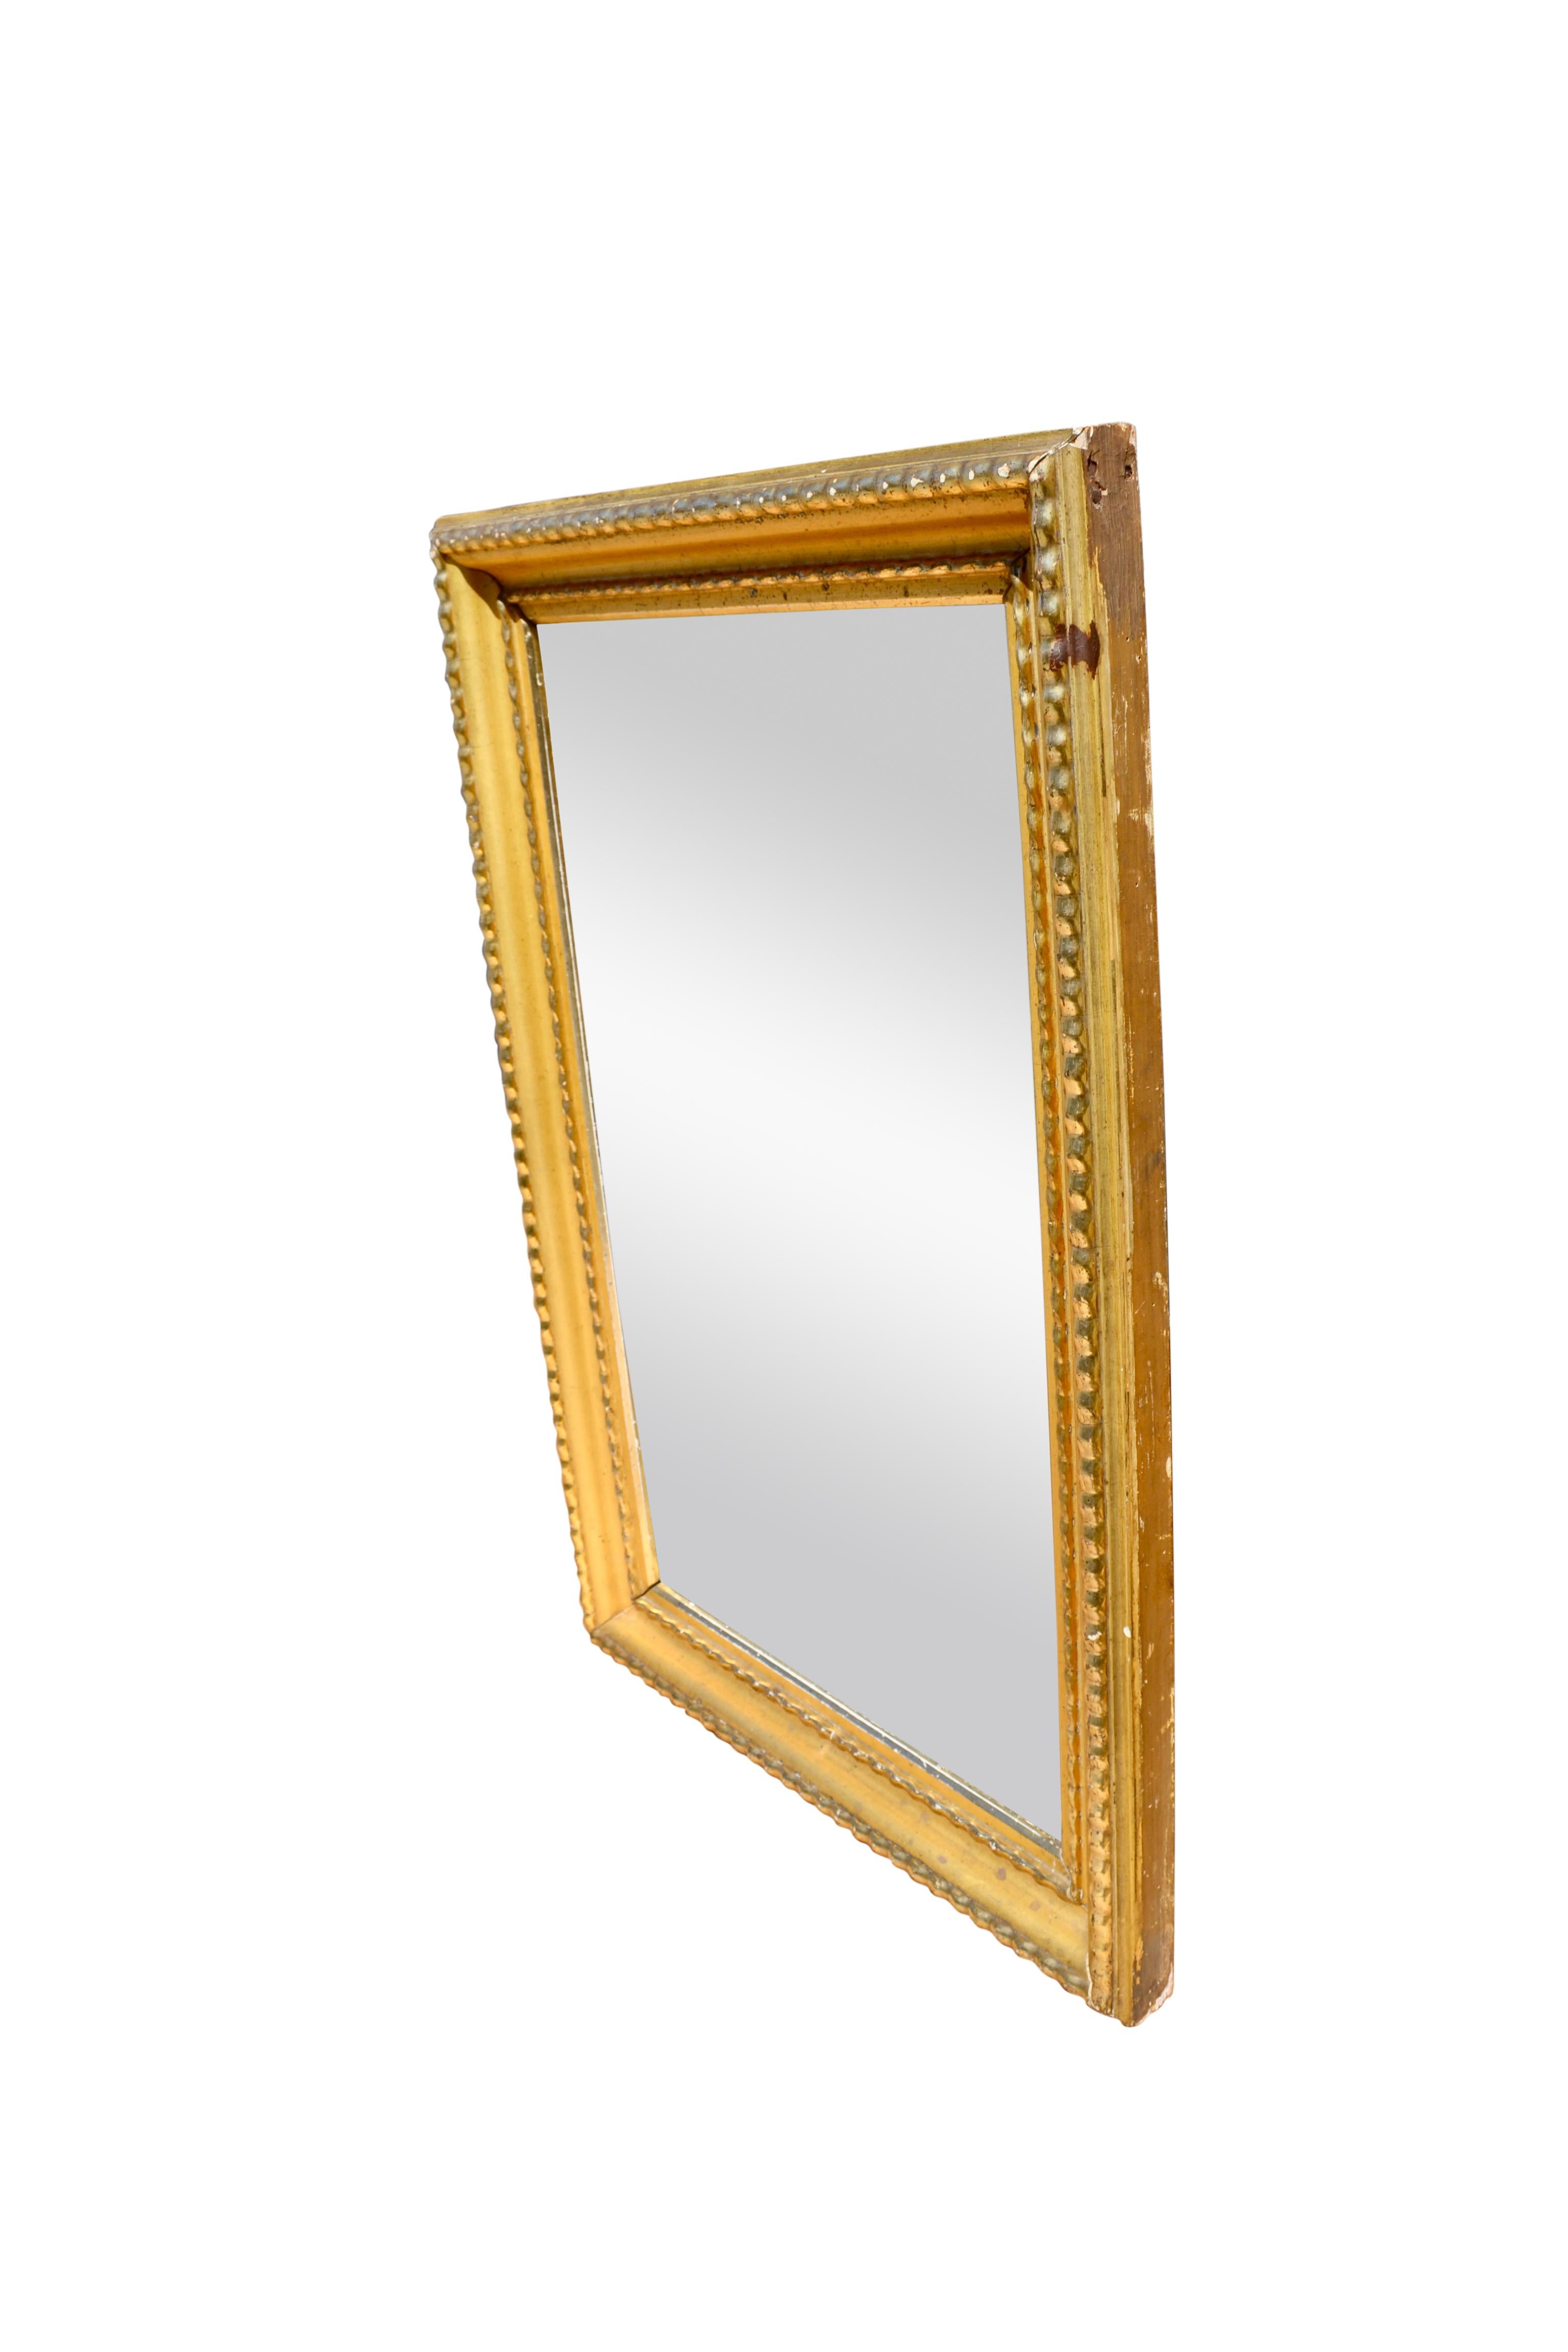 Empire 19thC Gilded Wood Framed Beveled Mirror For Sale